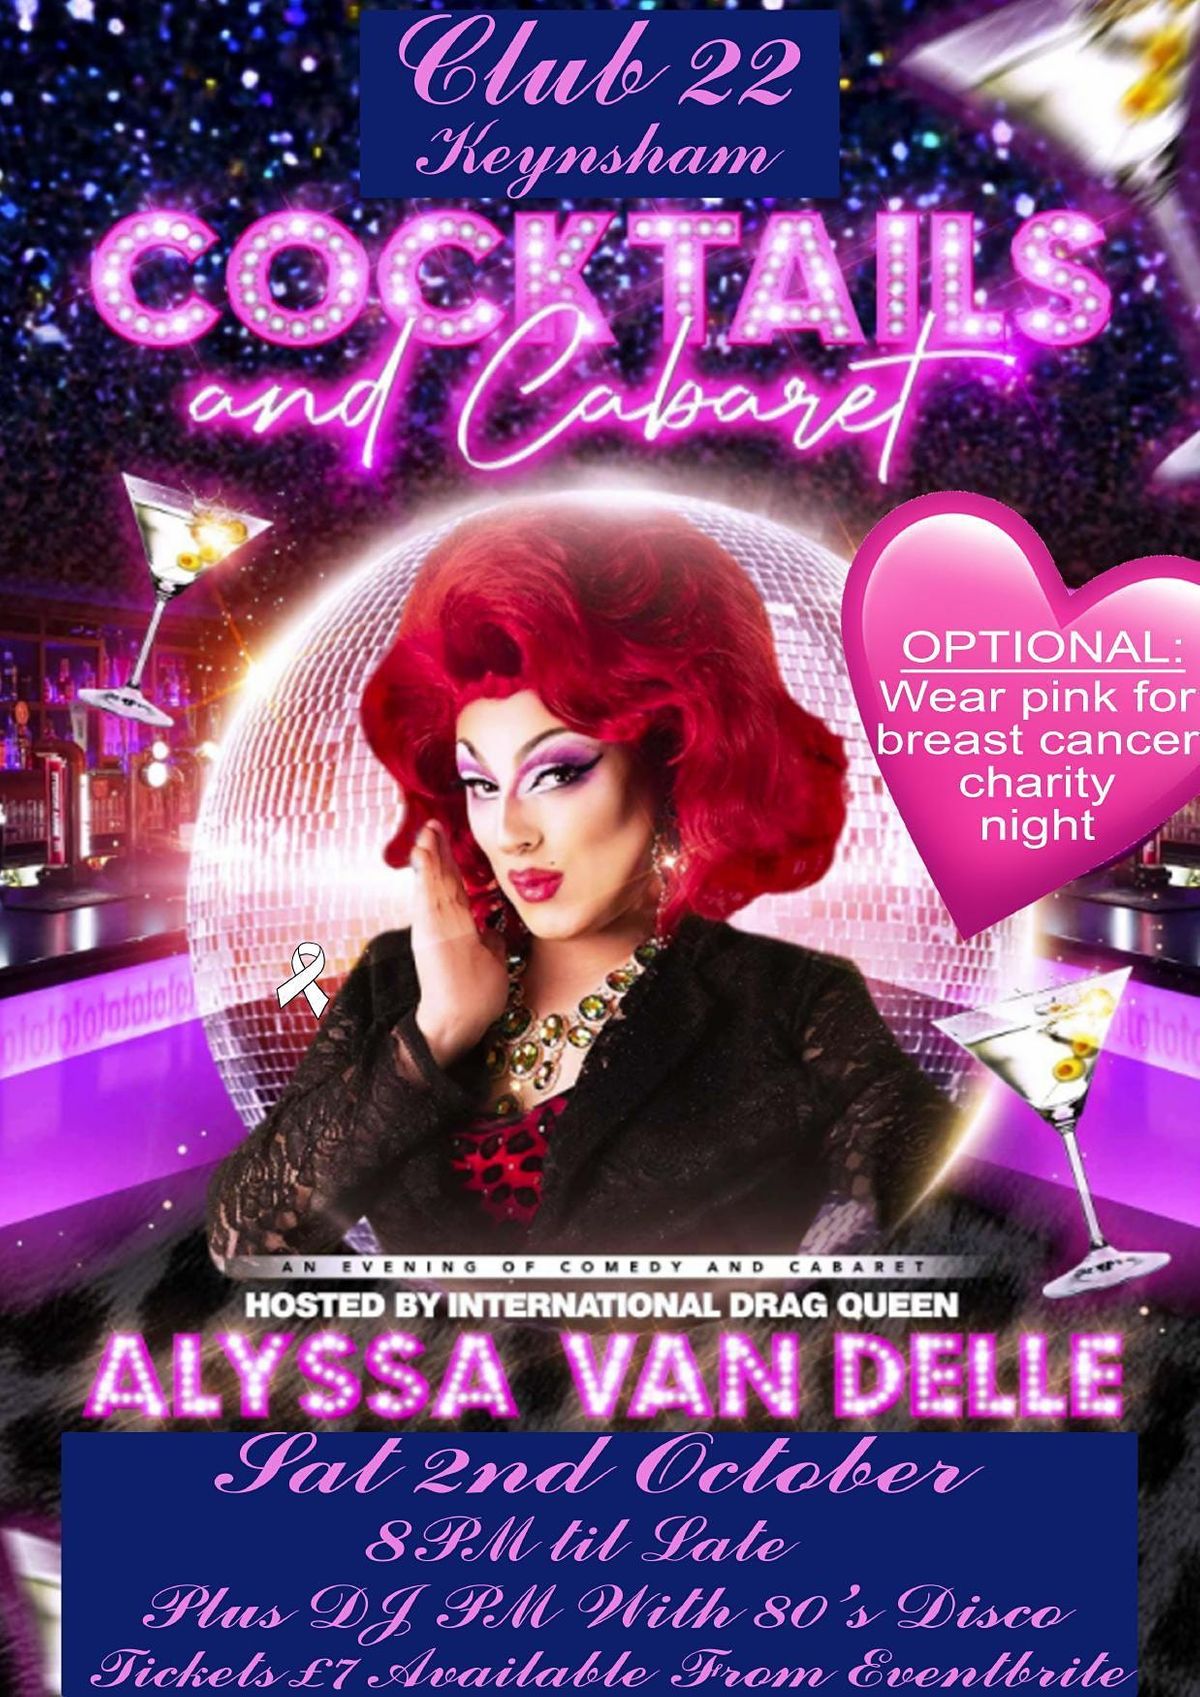 Drag Night with ALYSSA VAN DELLE plus 80s disco wi